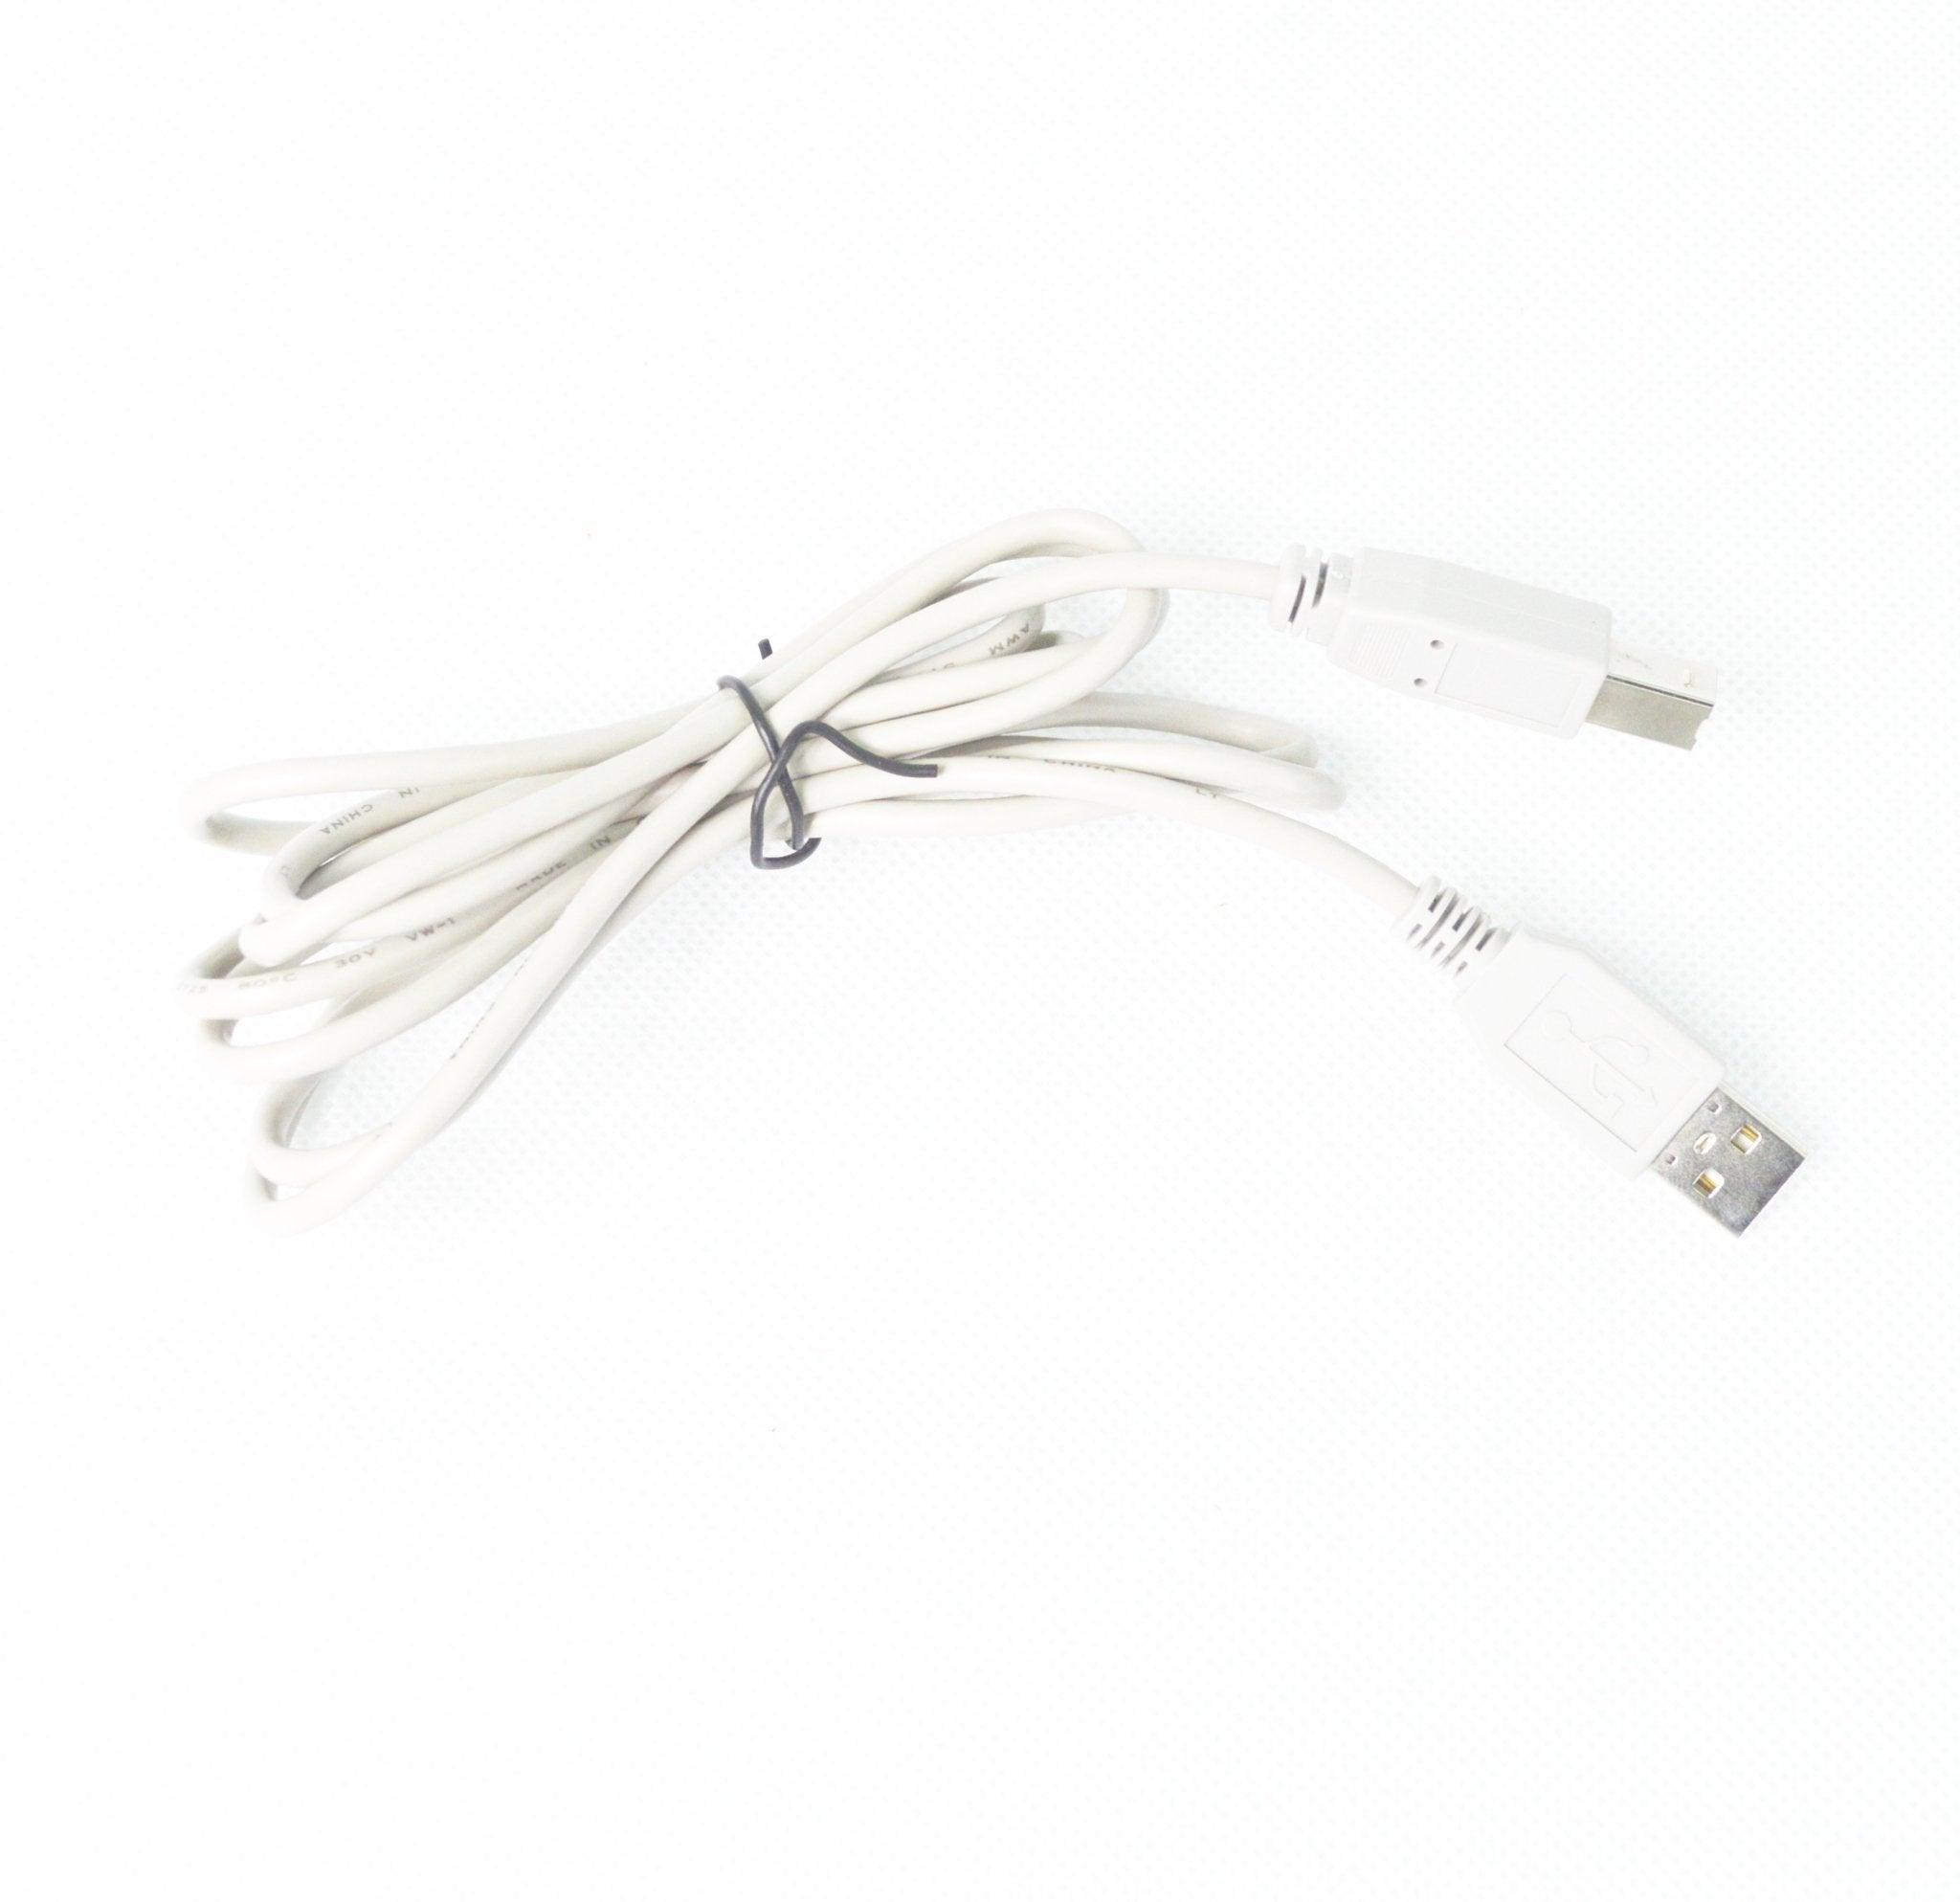 Cable Usb Para Impresora 1M a solo $ 20.00 Refaccion y puestos celulares, refurbish y microelectronica.- FixOEM